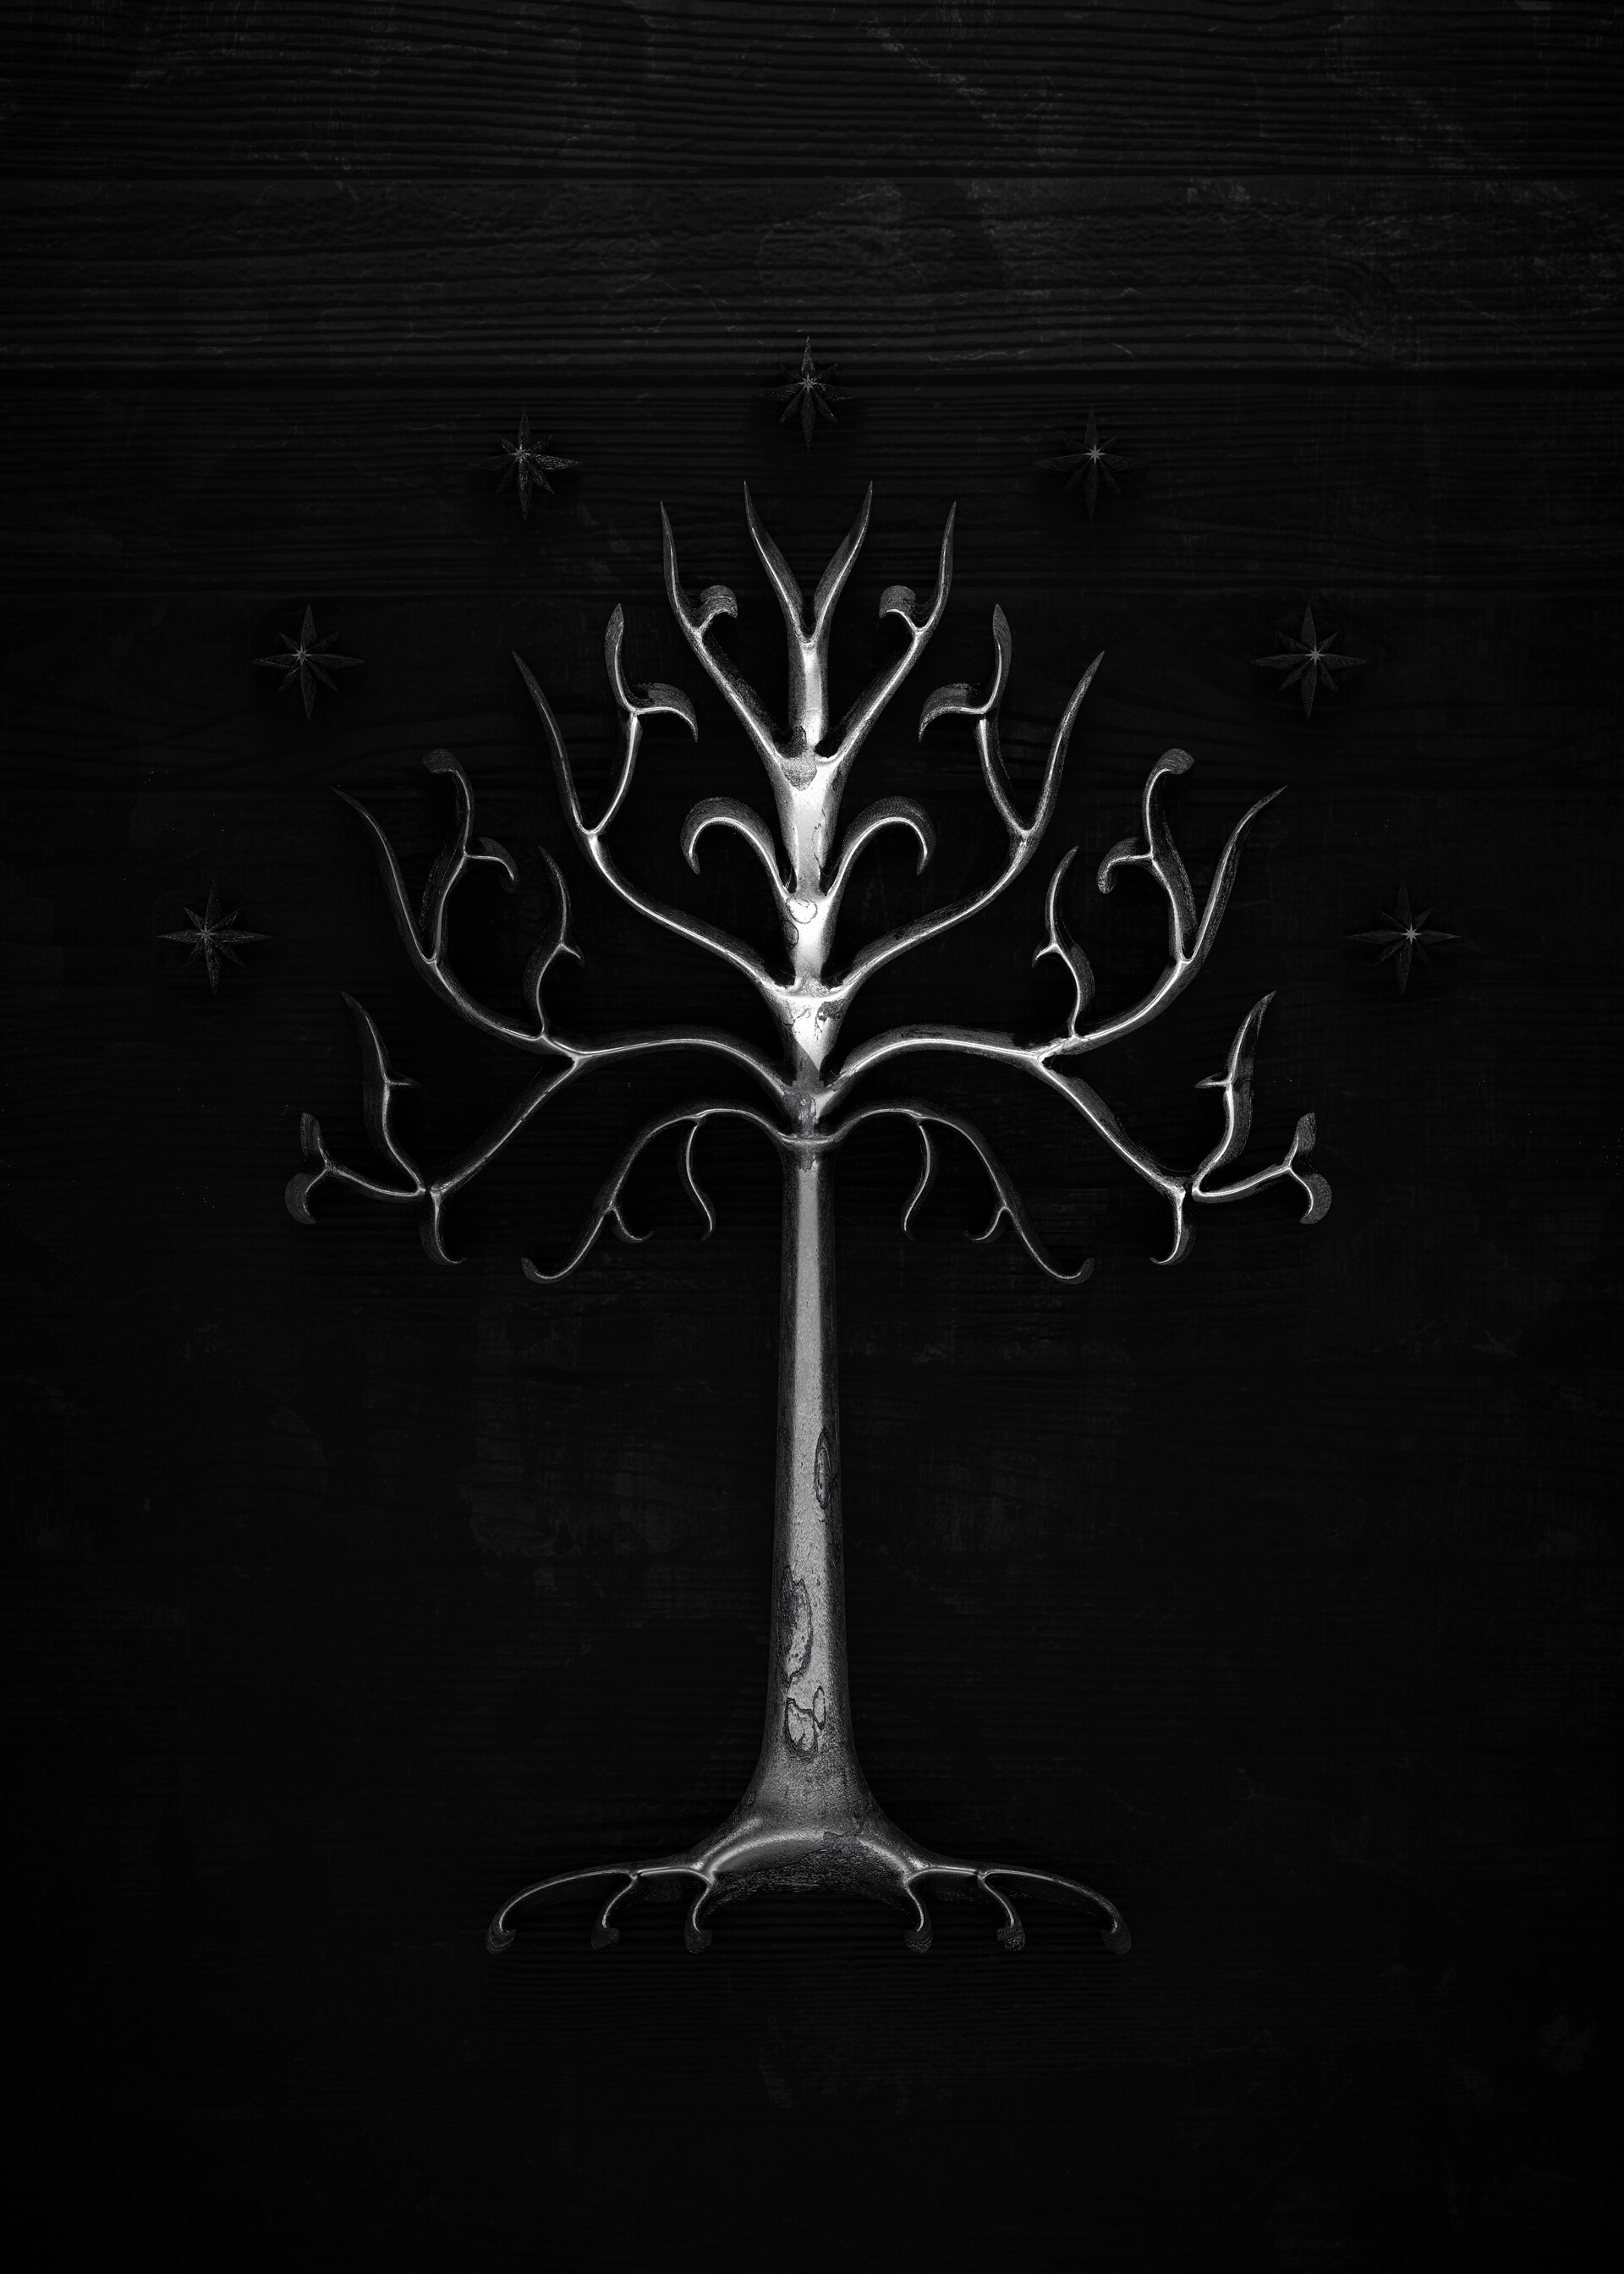 ArtStation - The White Tree of Gondor - Minas Tirith